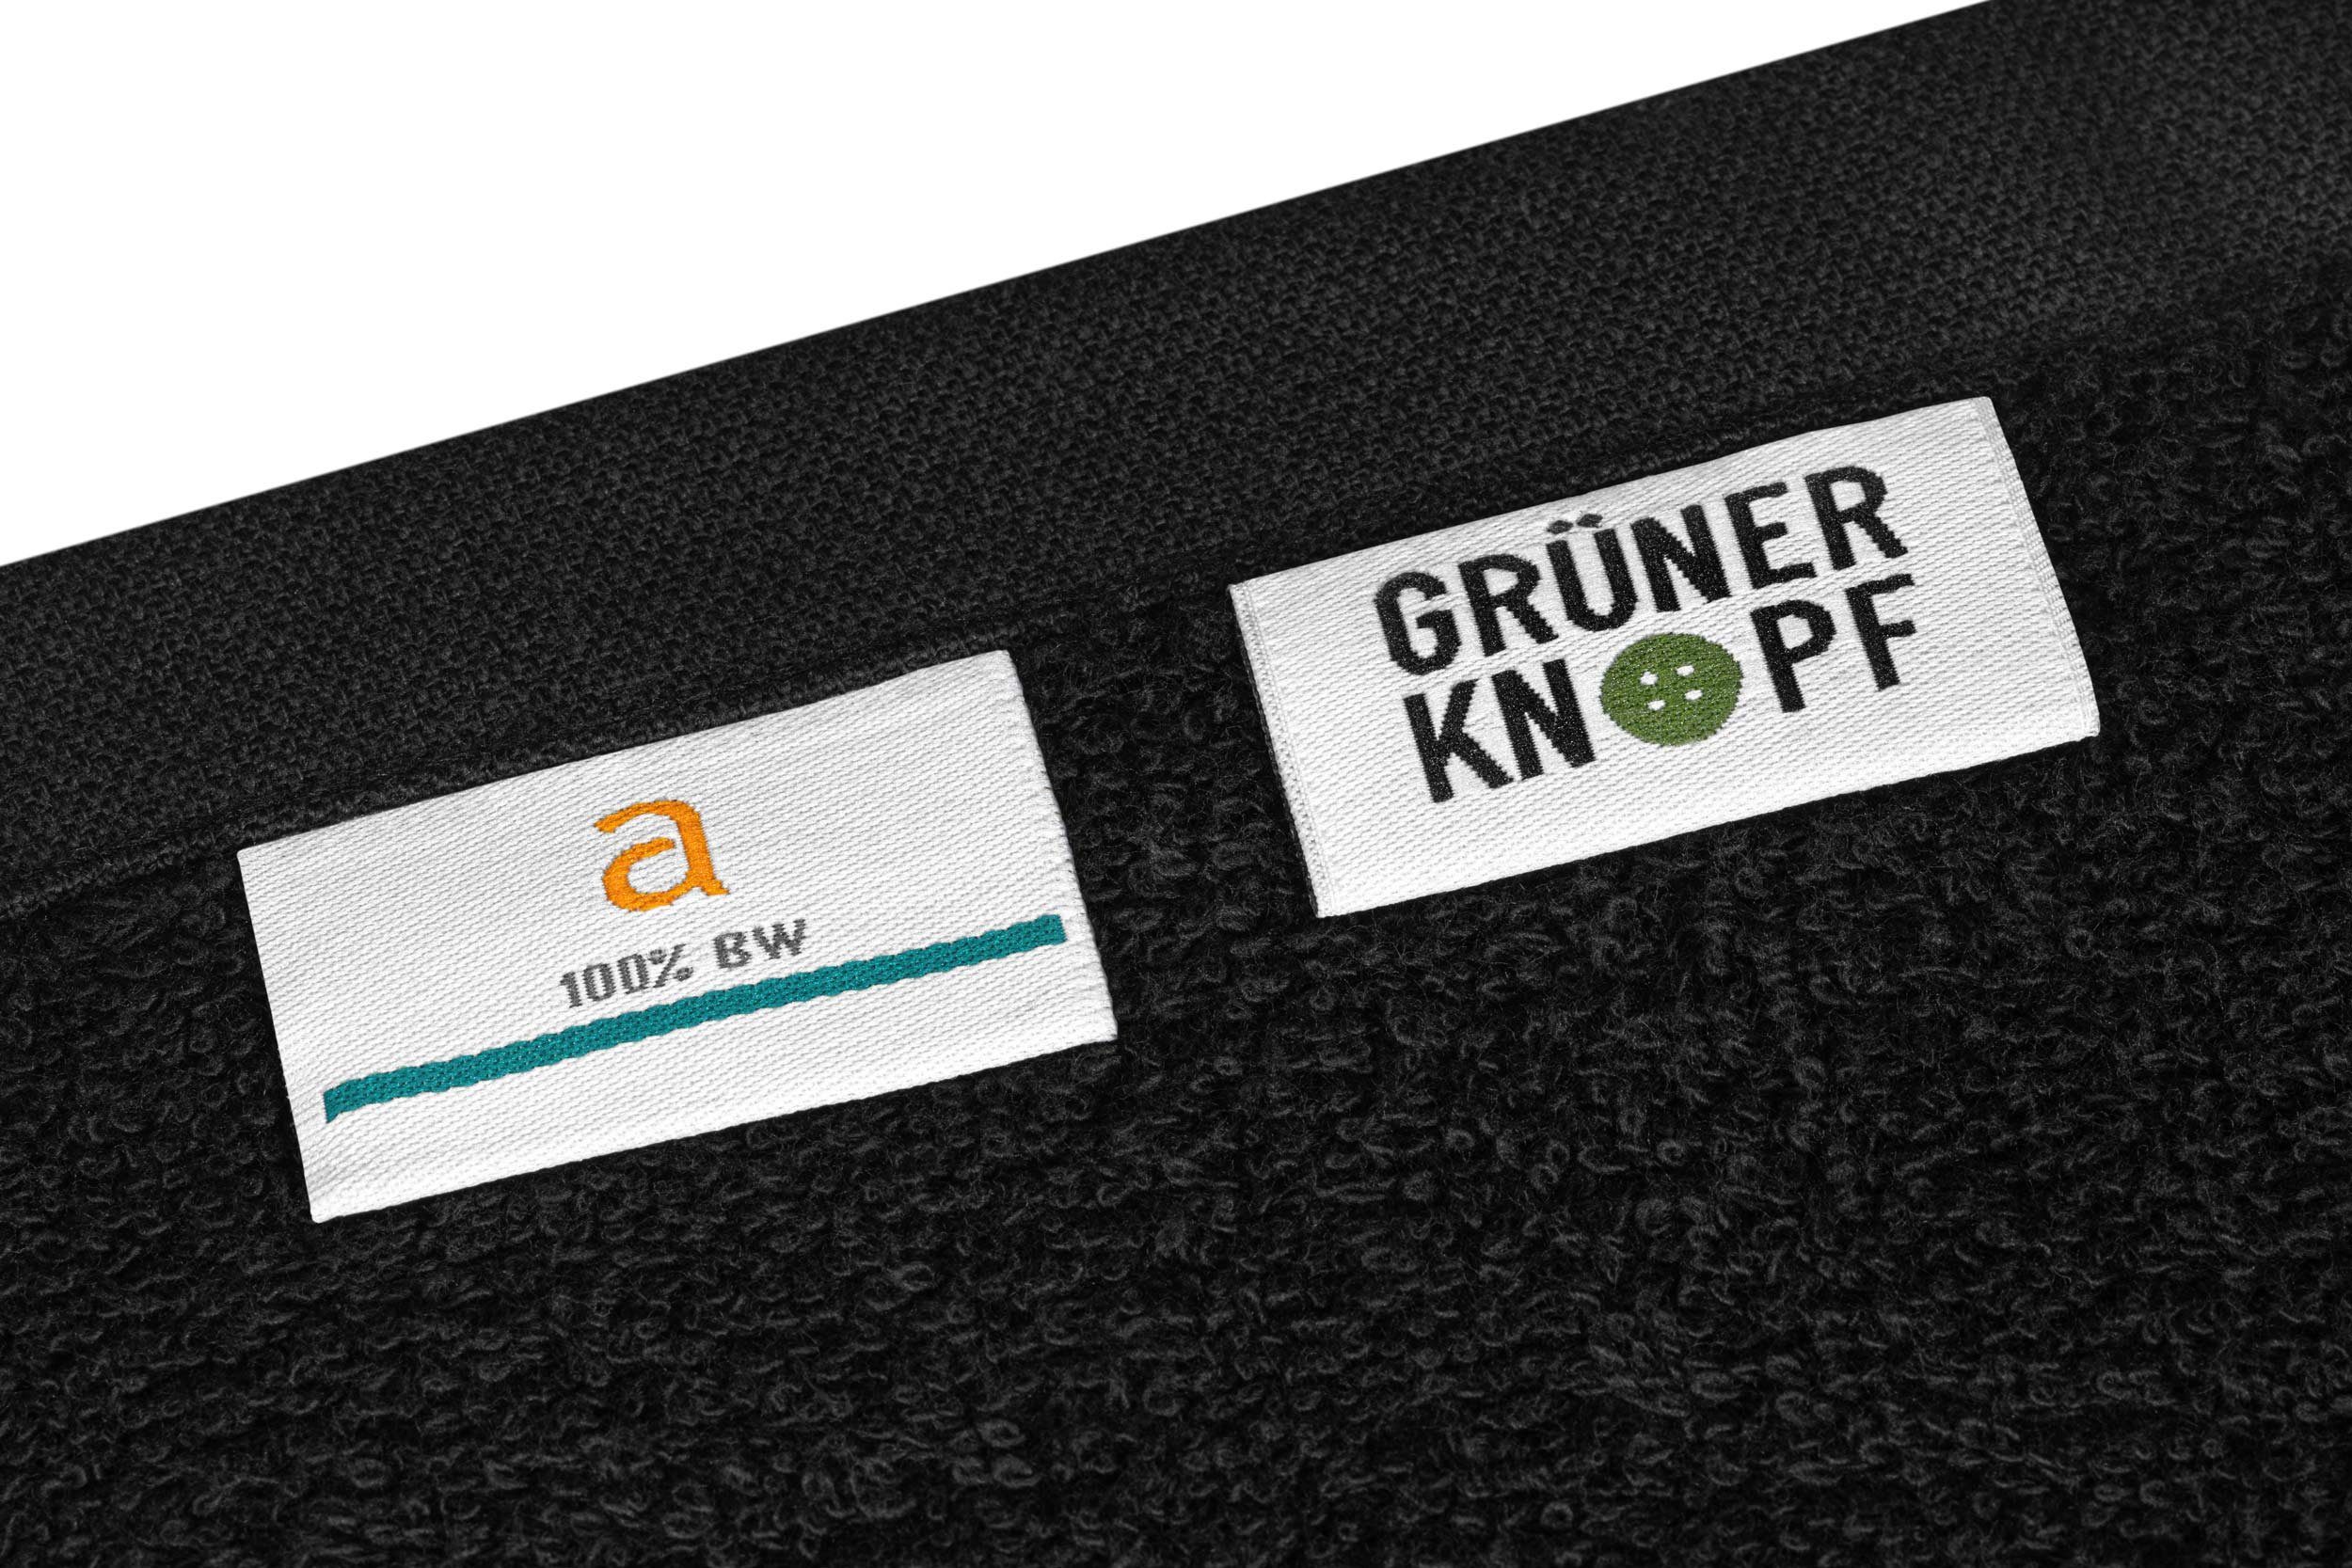 100% Handtuch Qualität Baumwolle, Objektwäsche Rio 6-teilig Set Premium Badetücher aurora Baumwolle schwarz